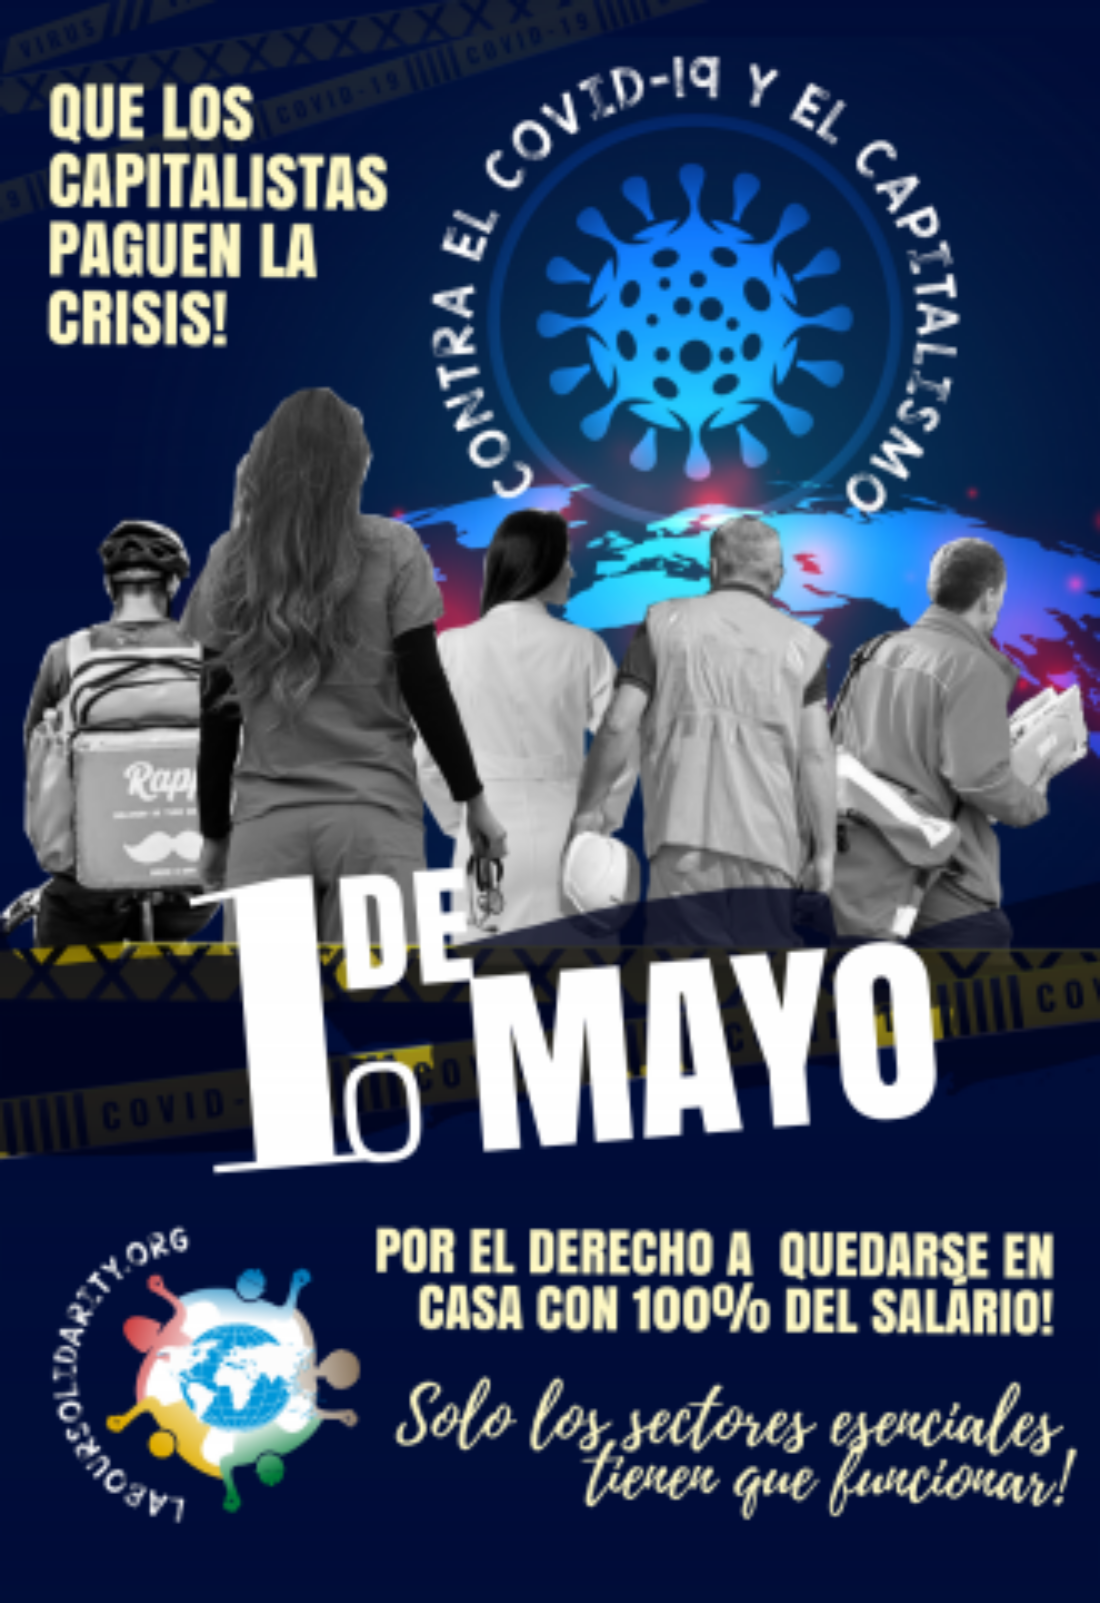 1º de mayo: Día histórico y de lucha internacional de la clase trabajadora